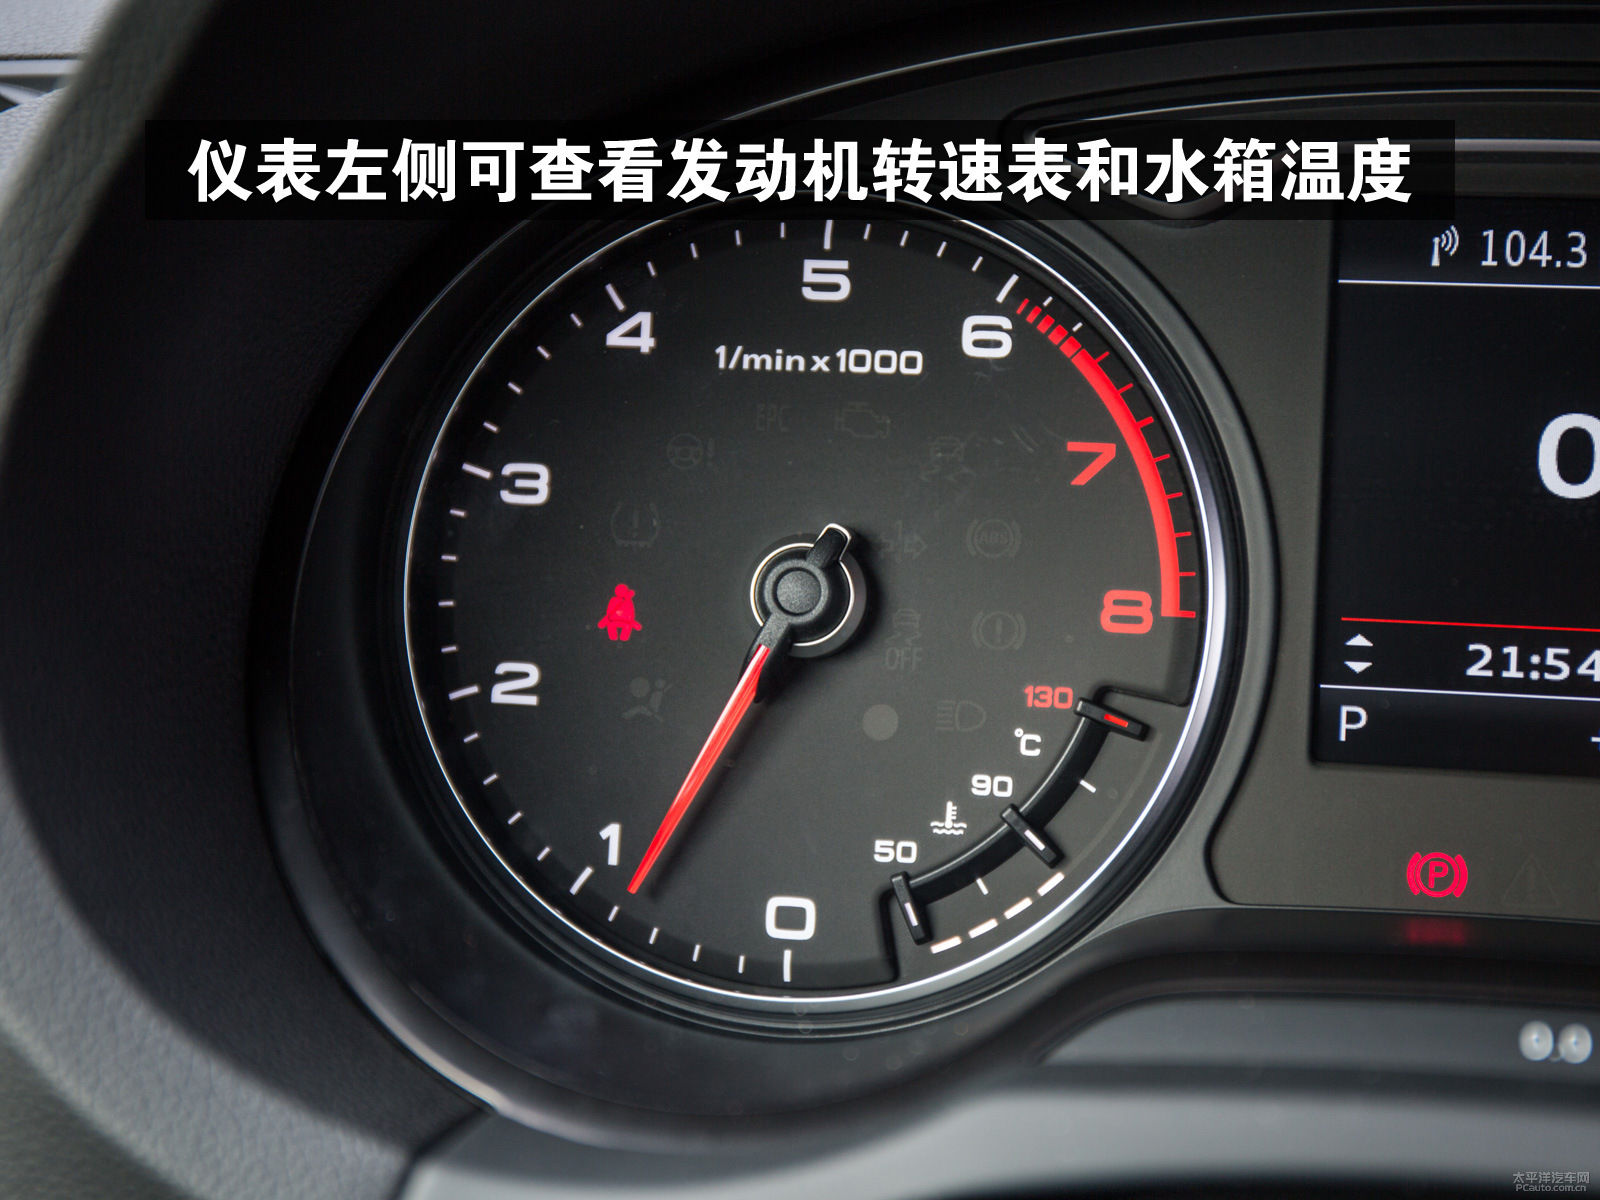 仪表左侧为发动机转速表,此处还可查看发动机的工作温度.